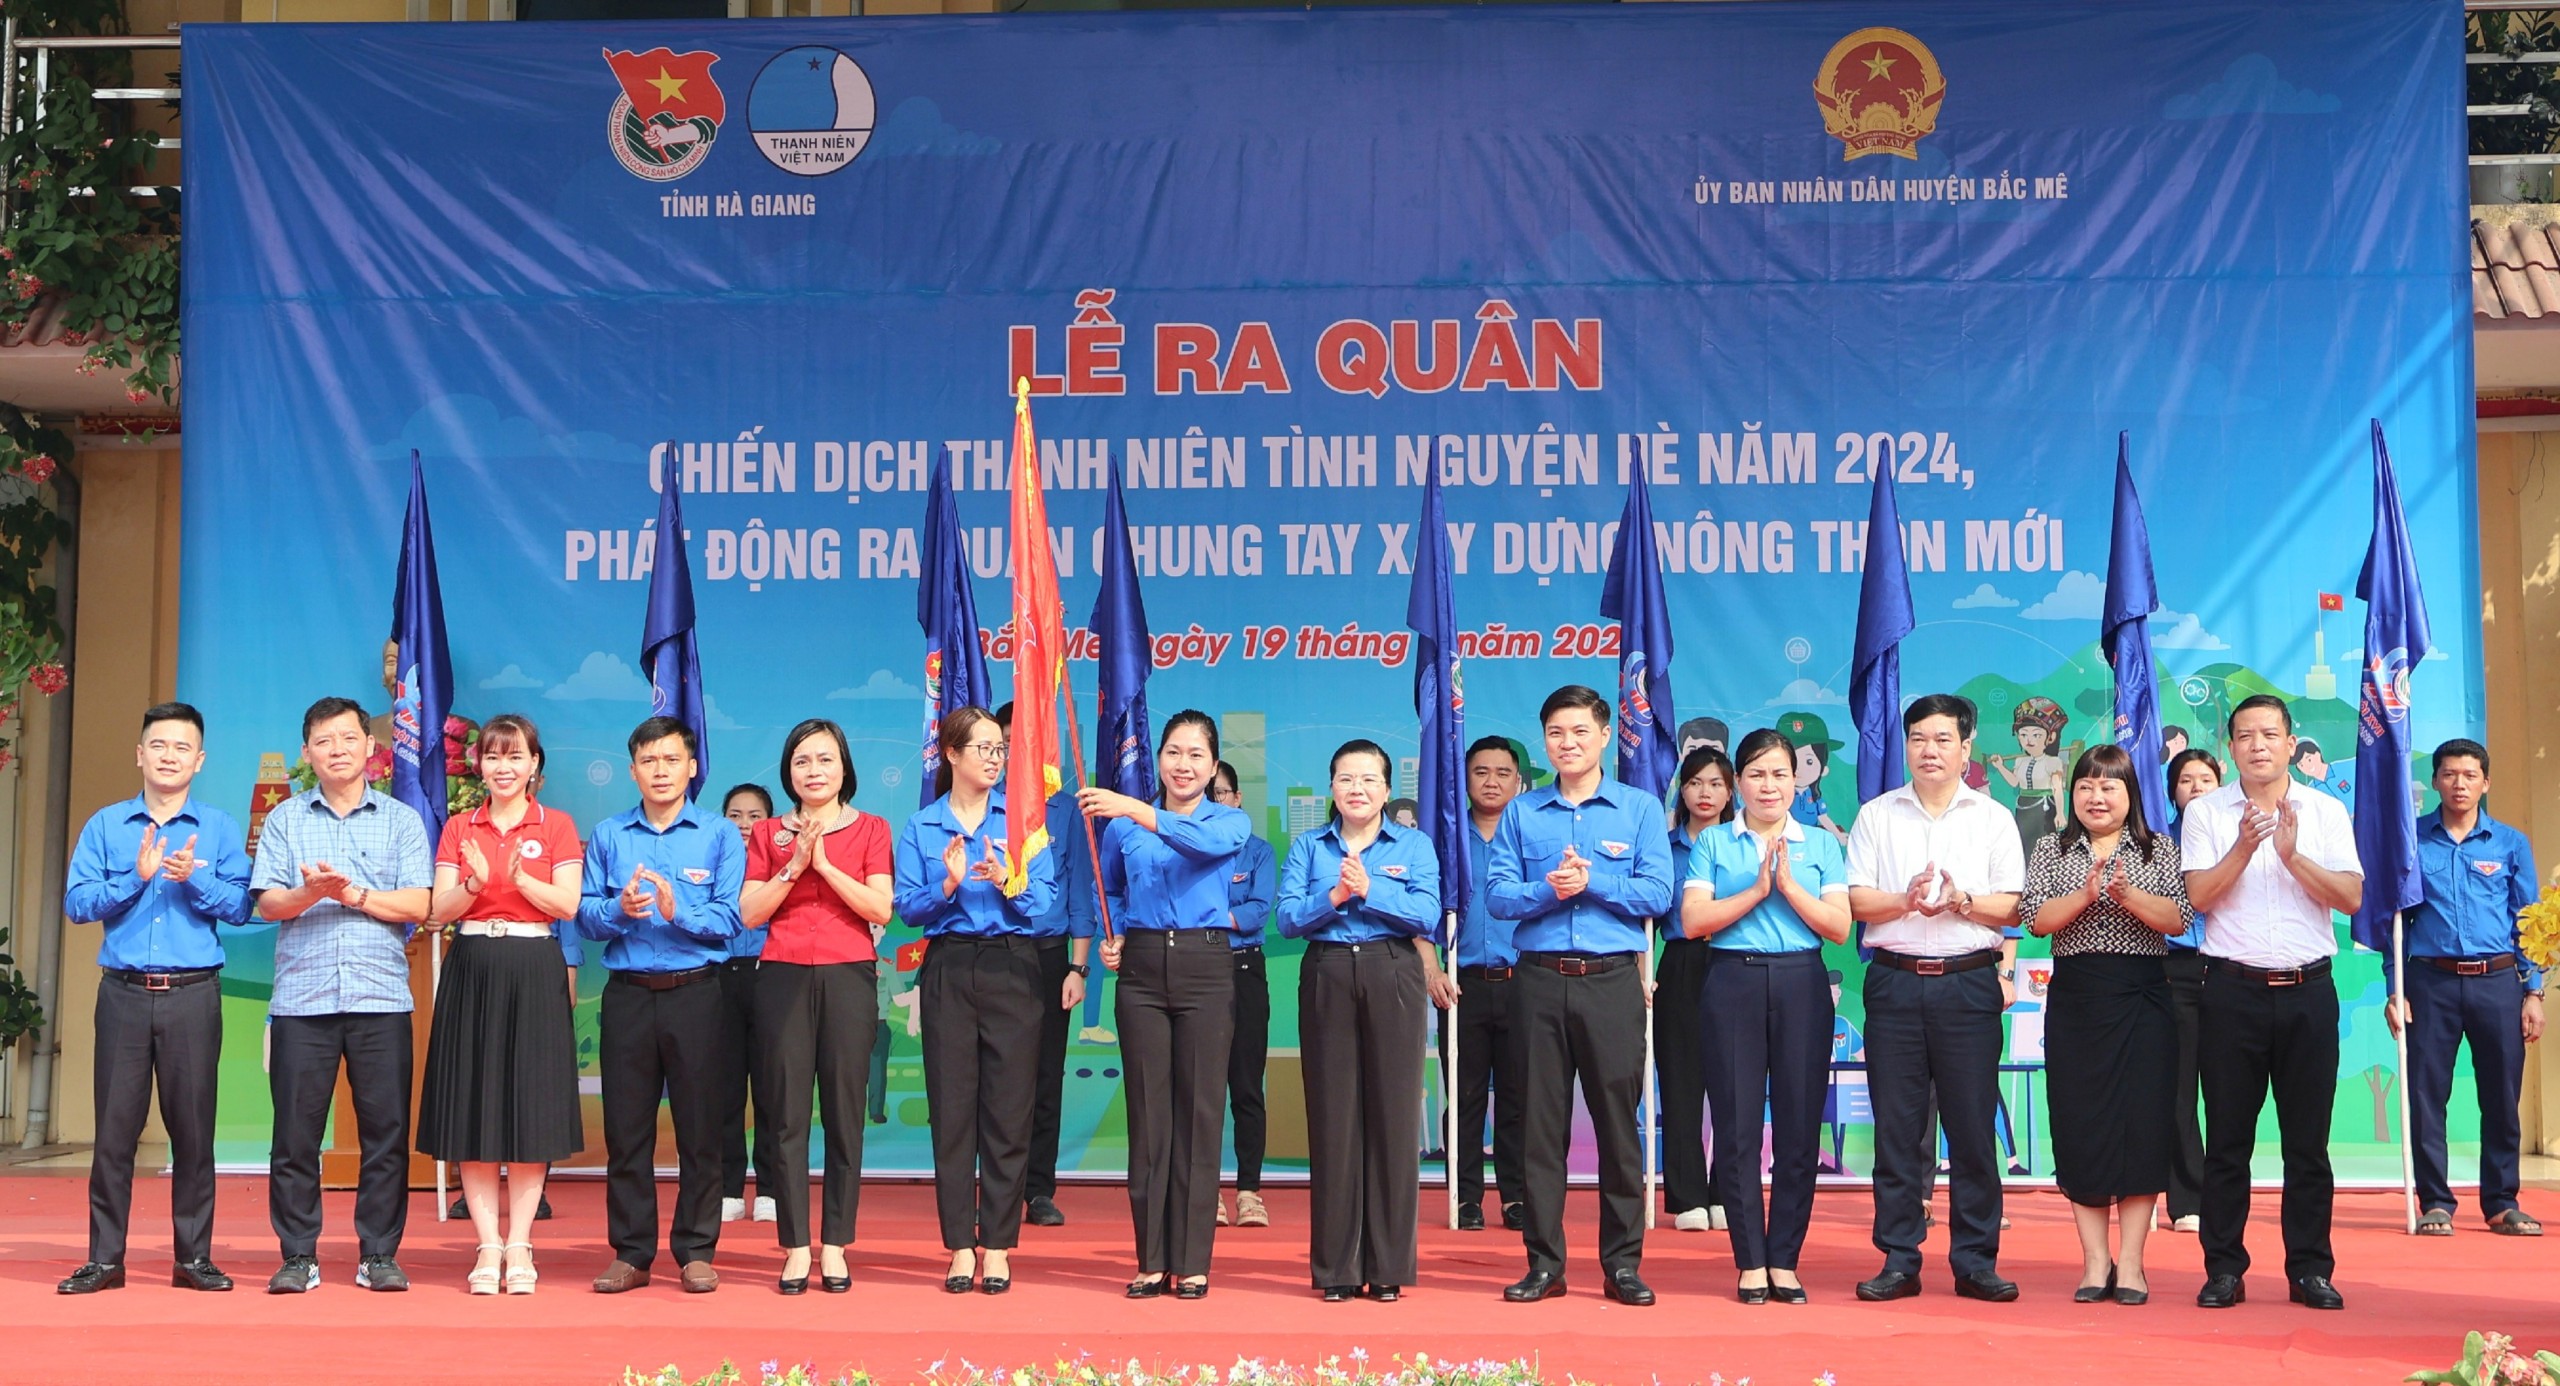 Lãnh đạo Tỉnh đoàn và các sở, ngành trao cờ phát động ra quân Chiến dịch Thanh niên tình nguyện hè năm 2024 cho huyện Bắc Mê.